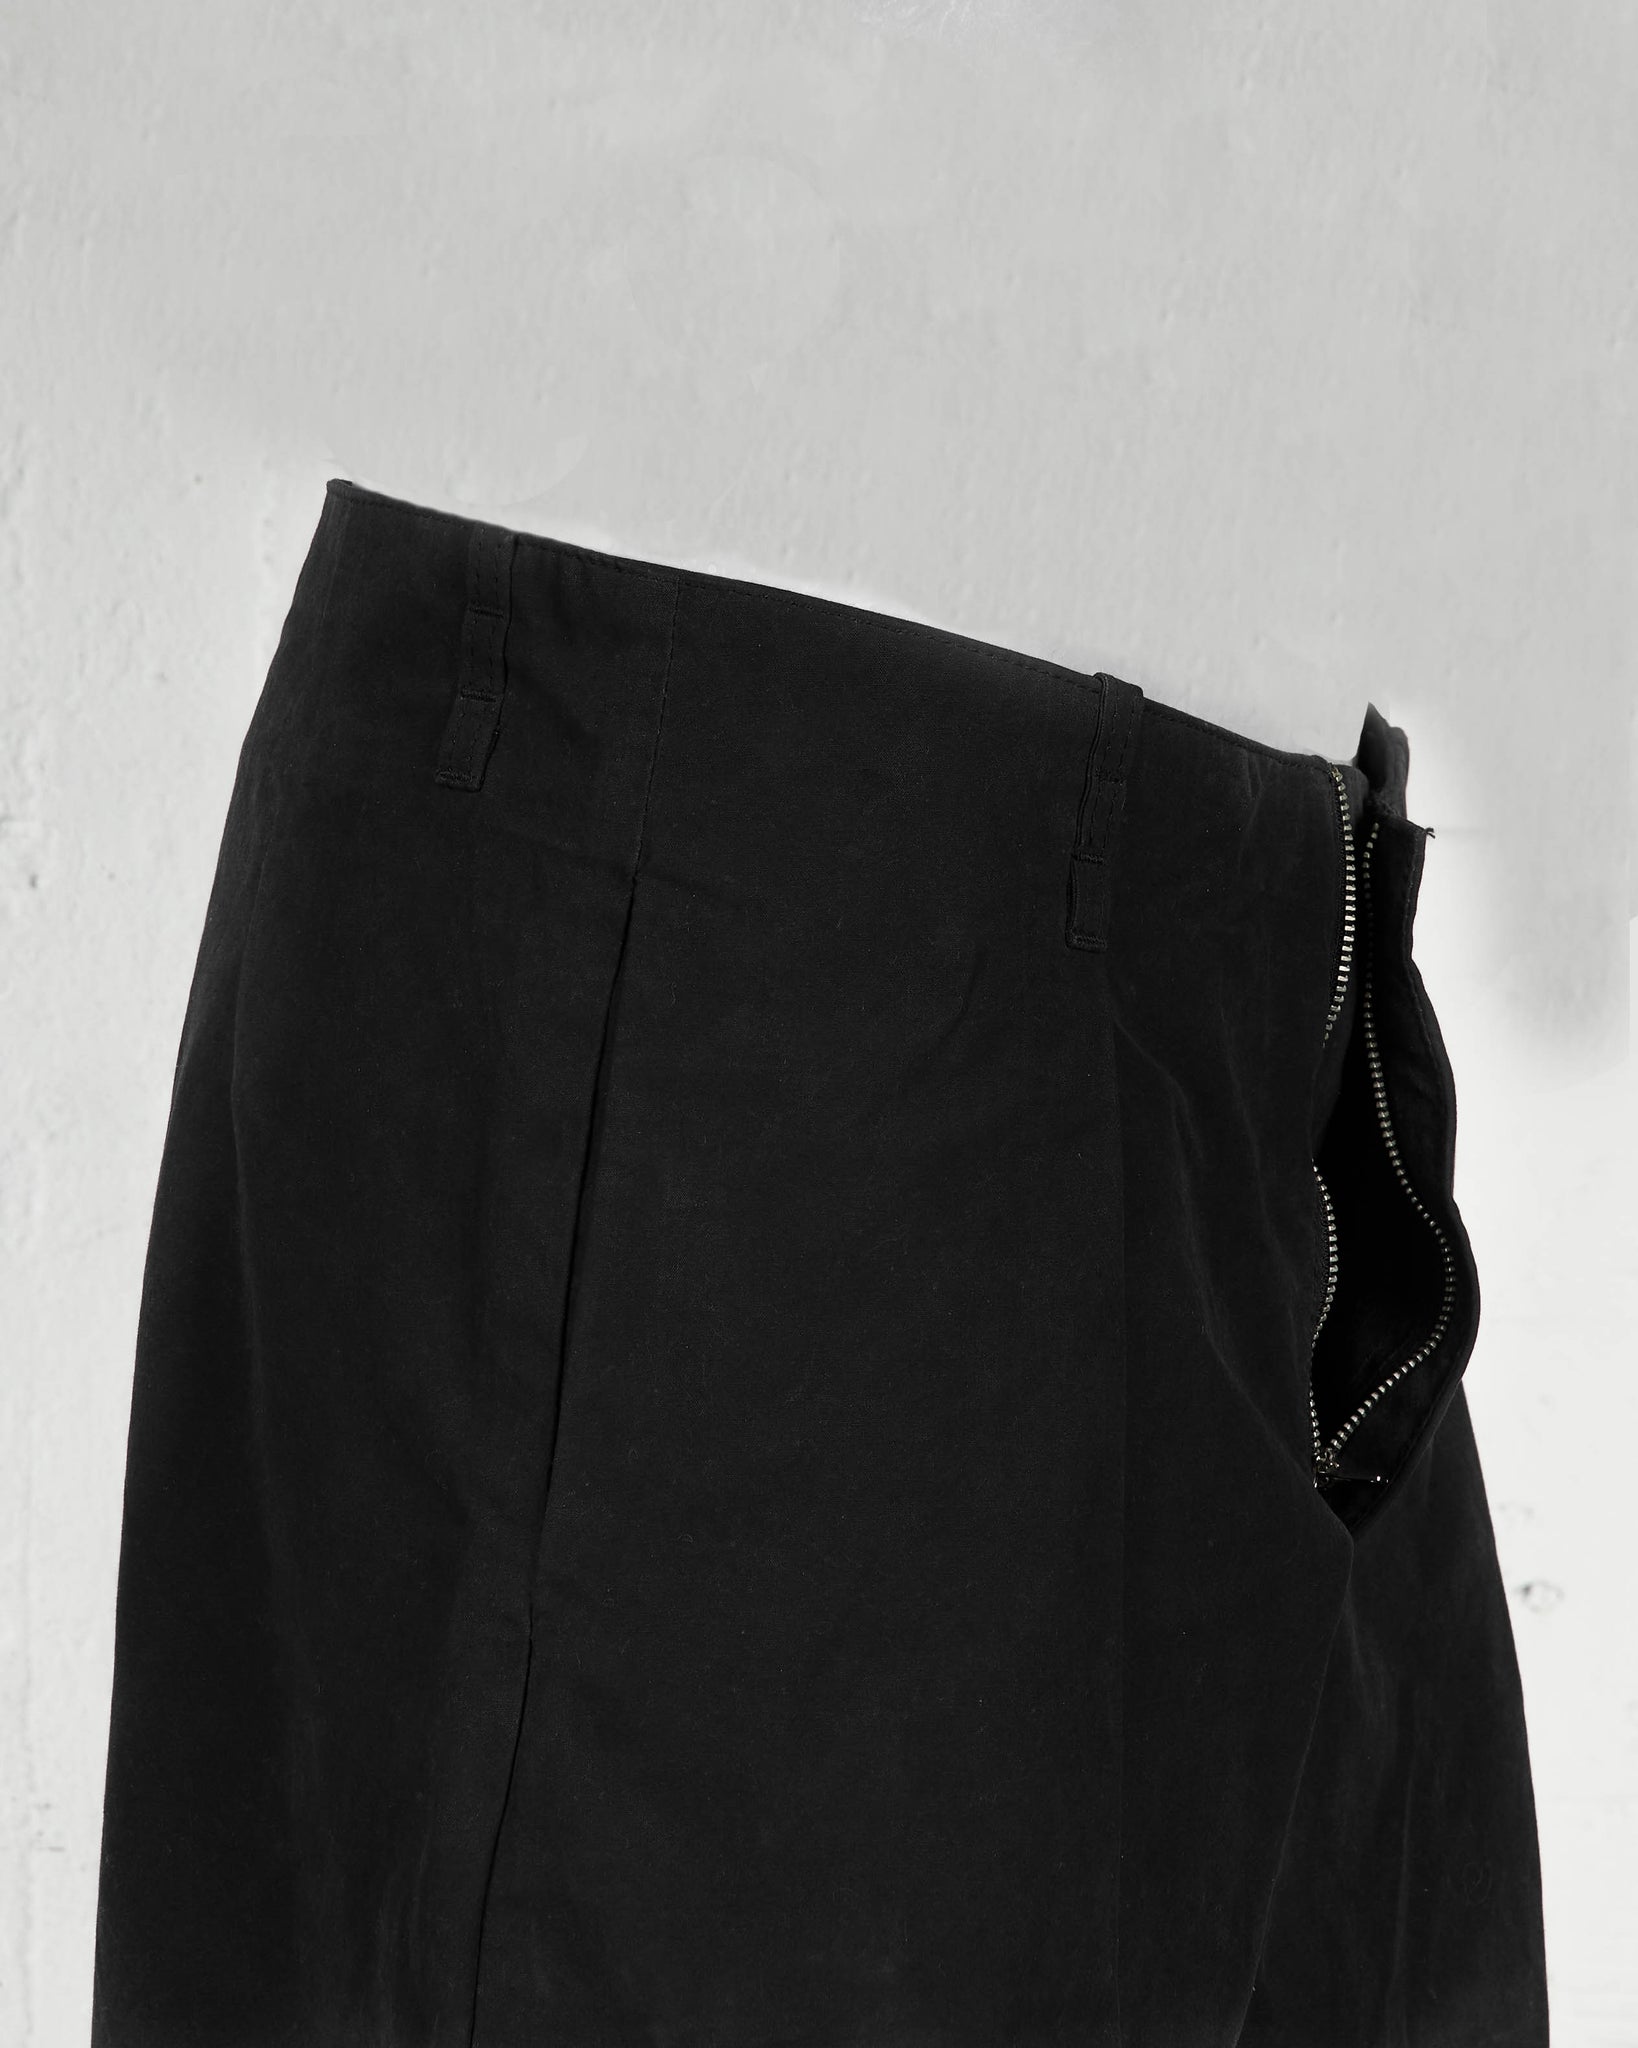 Jaron Baker Legacy Black Pant Flat Lay Unzipped Detail